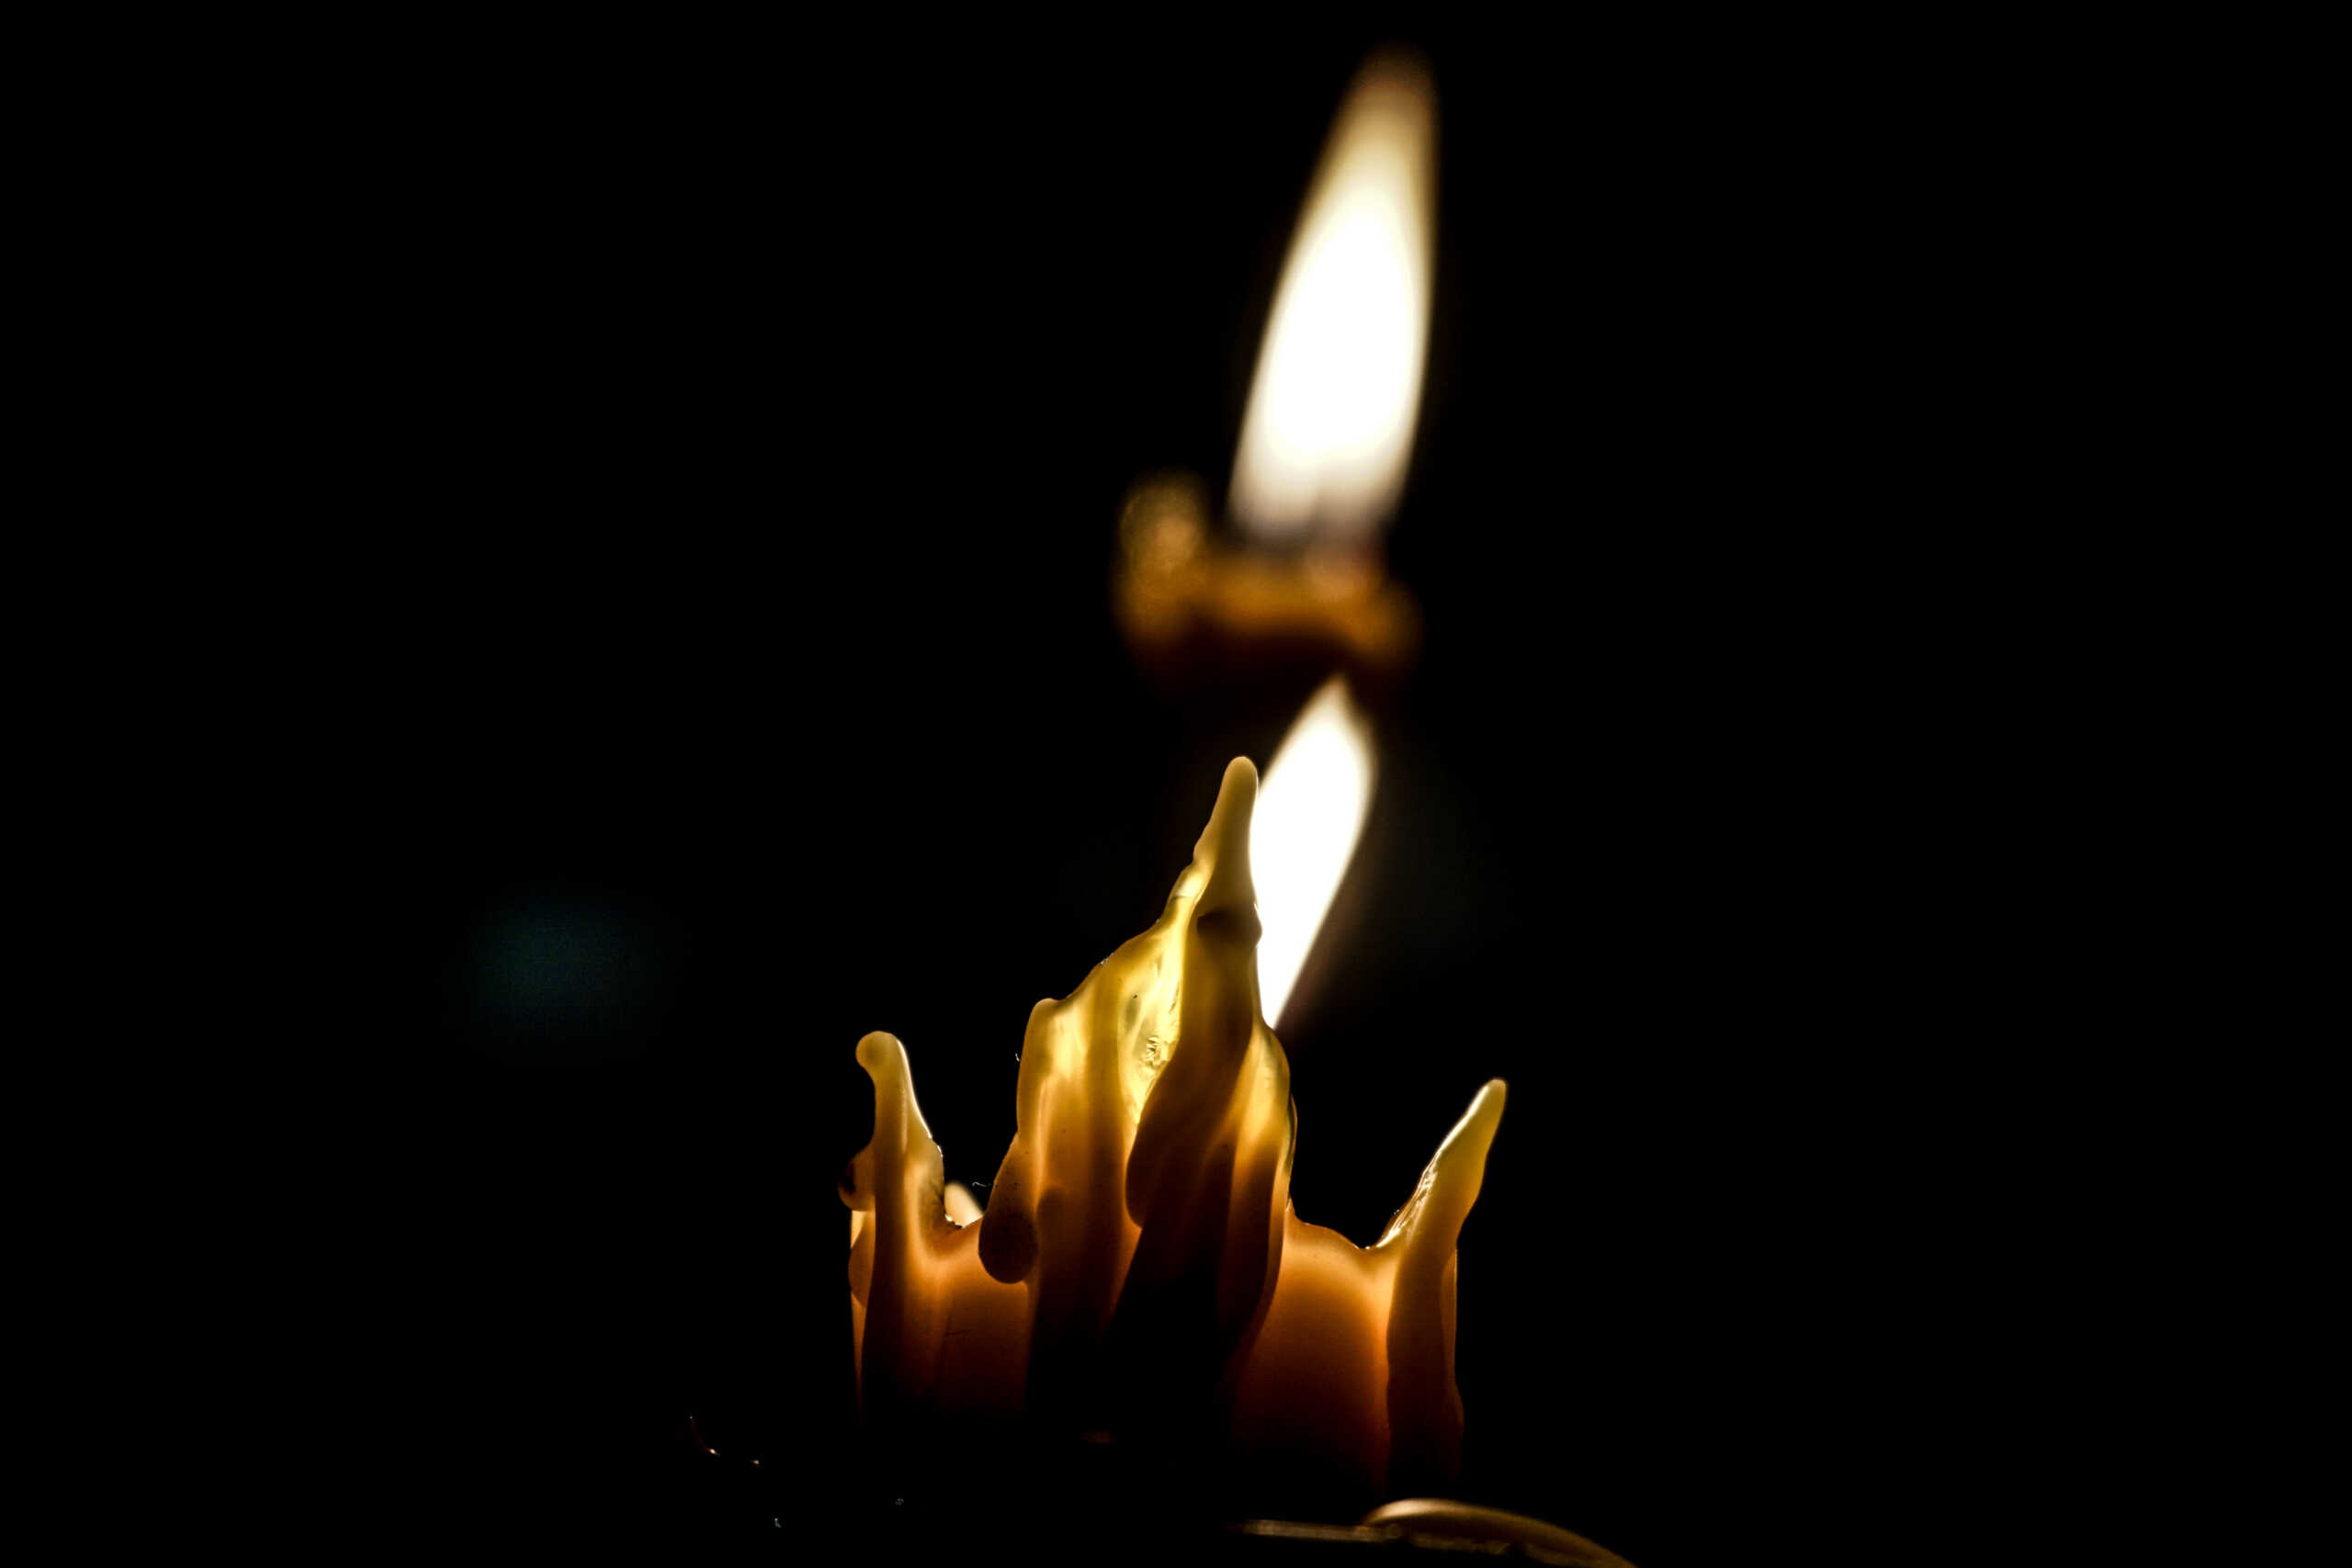 Ξάνθη: Πέθανε 49χρονος ανθυπασπιστής – Το συλλυπητήριο μήνυμα των συναδέλφων του